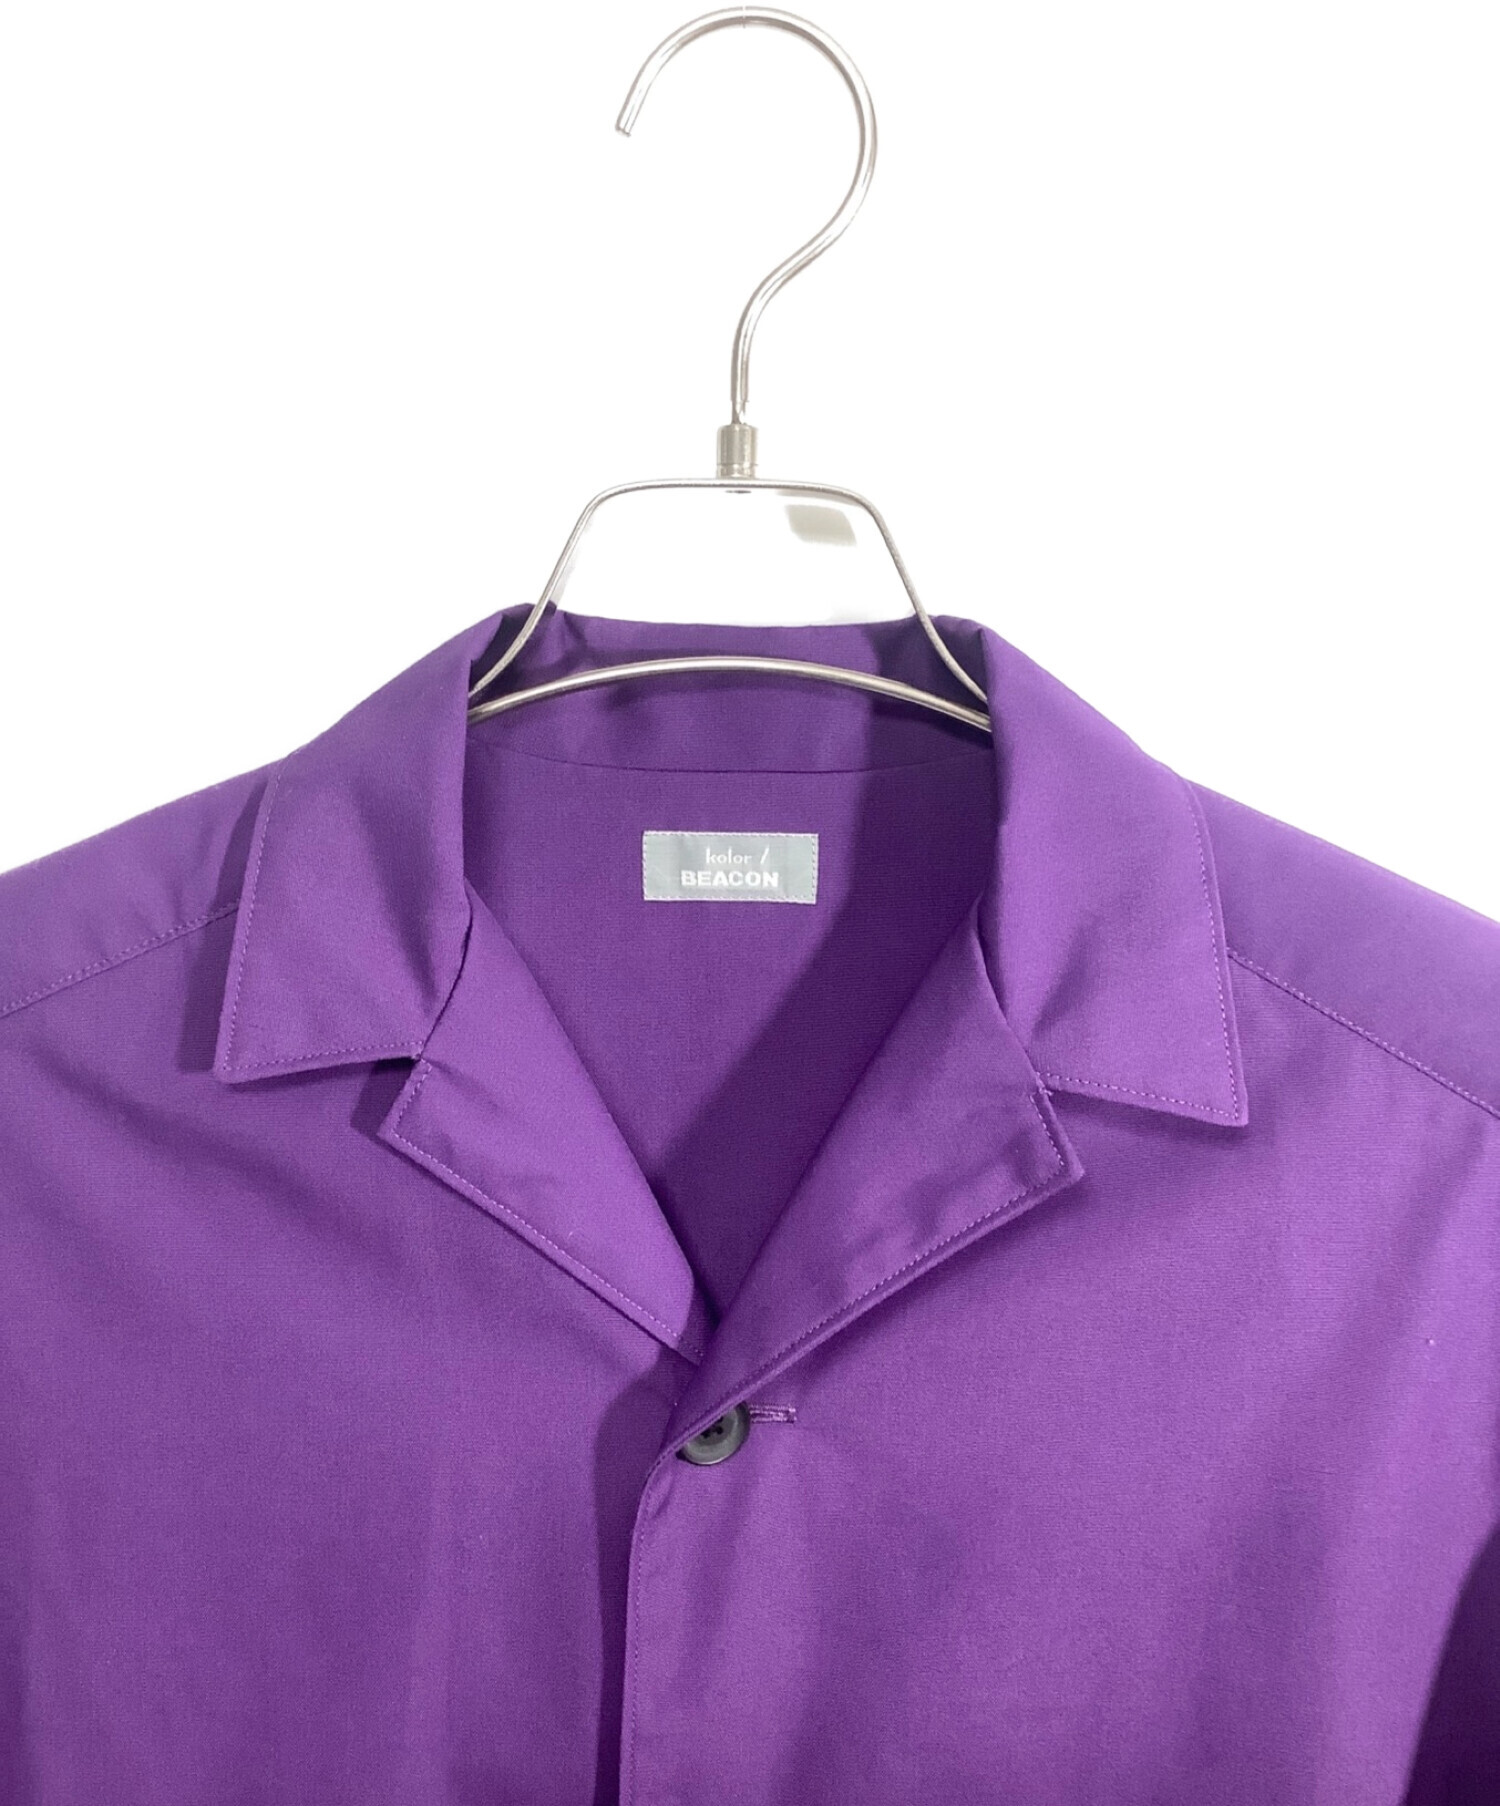 中古・古着通販】kolor/BEACON (カラービーコン) open collar shirt